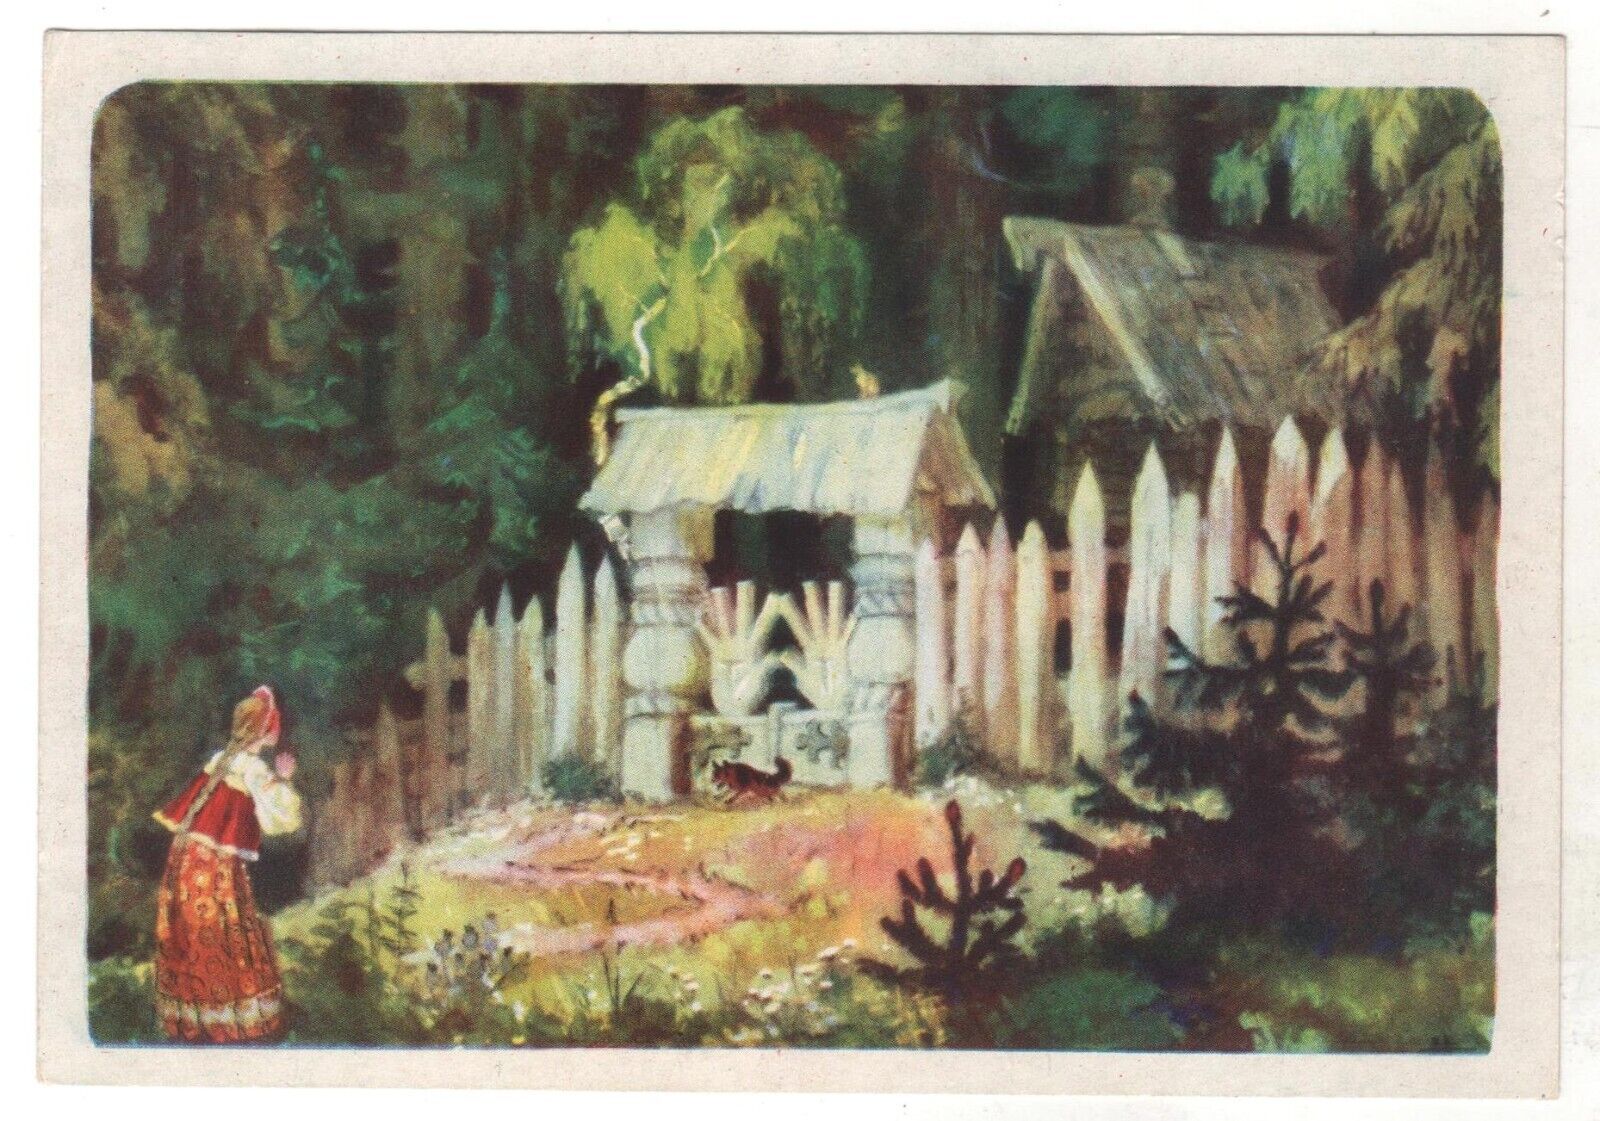 1957 Fairy Tale Baba Yaga's Hut & Girl RUSSIAN POSTCARD Old